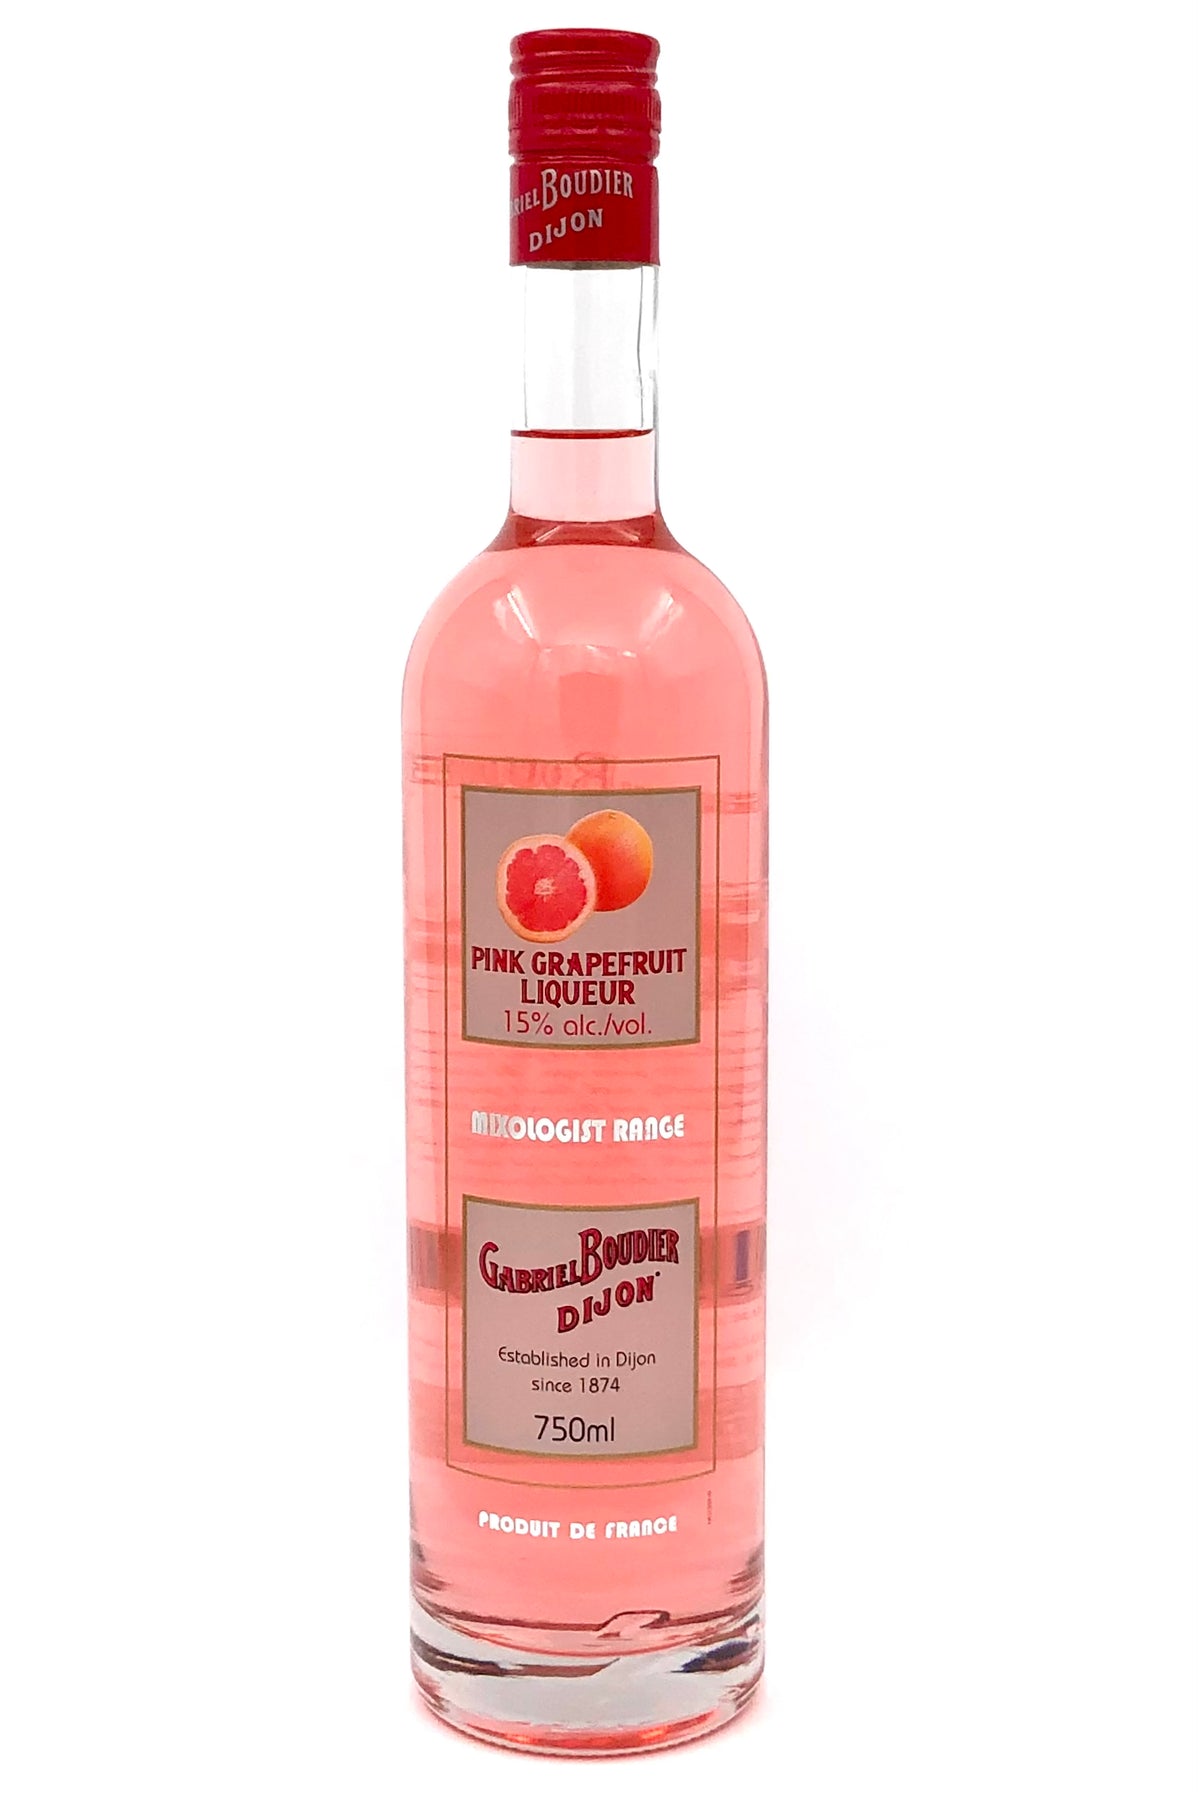 Gabriel Boudier Pink Grapefruit Pamplemousse Liqueur